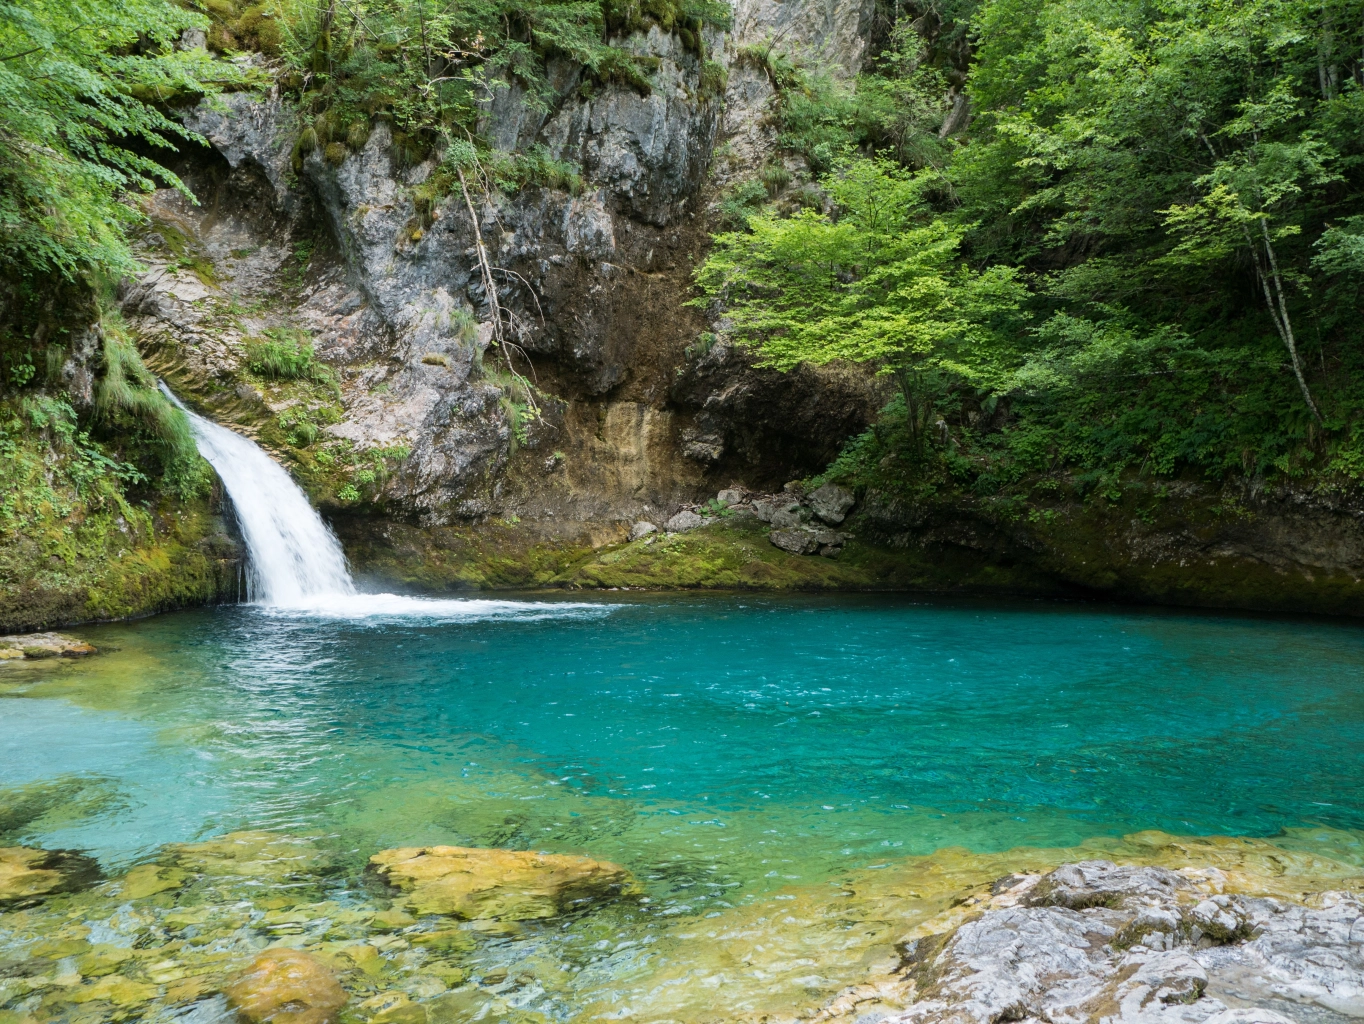 Plavo oko prirodni izvor u Albaniji